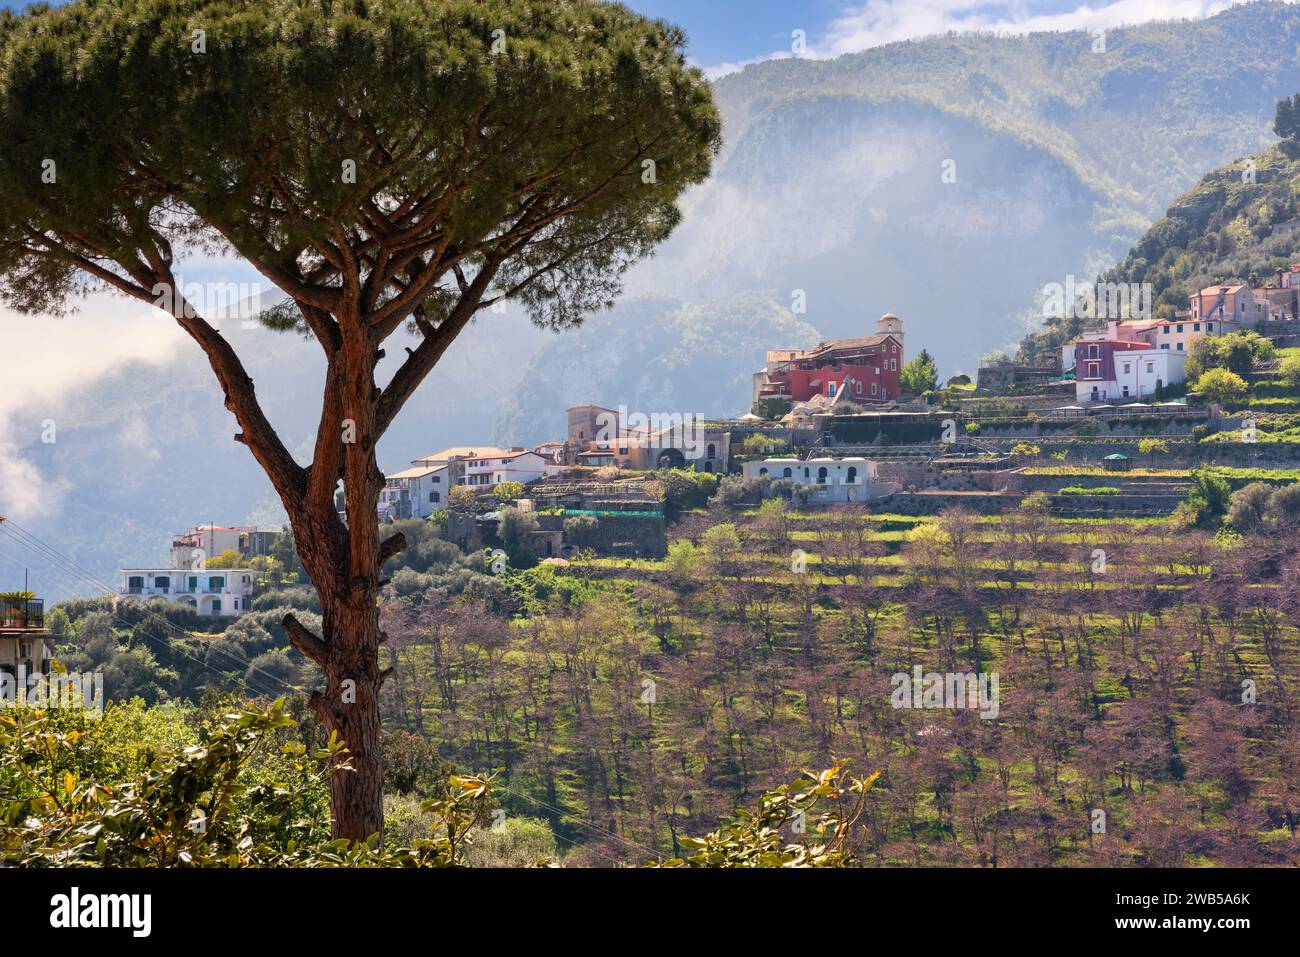 Kleines Dorf Ravello, eingebettet am Tyrrhenischen Meer an der italienischen Amalfiküste. Stockfoto